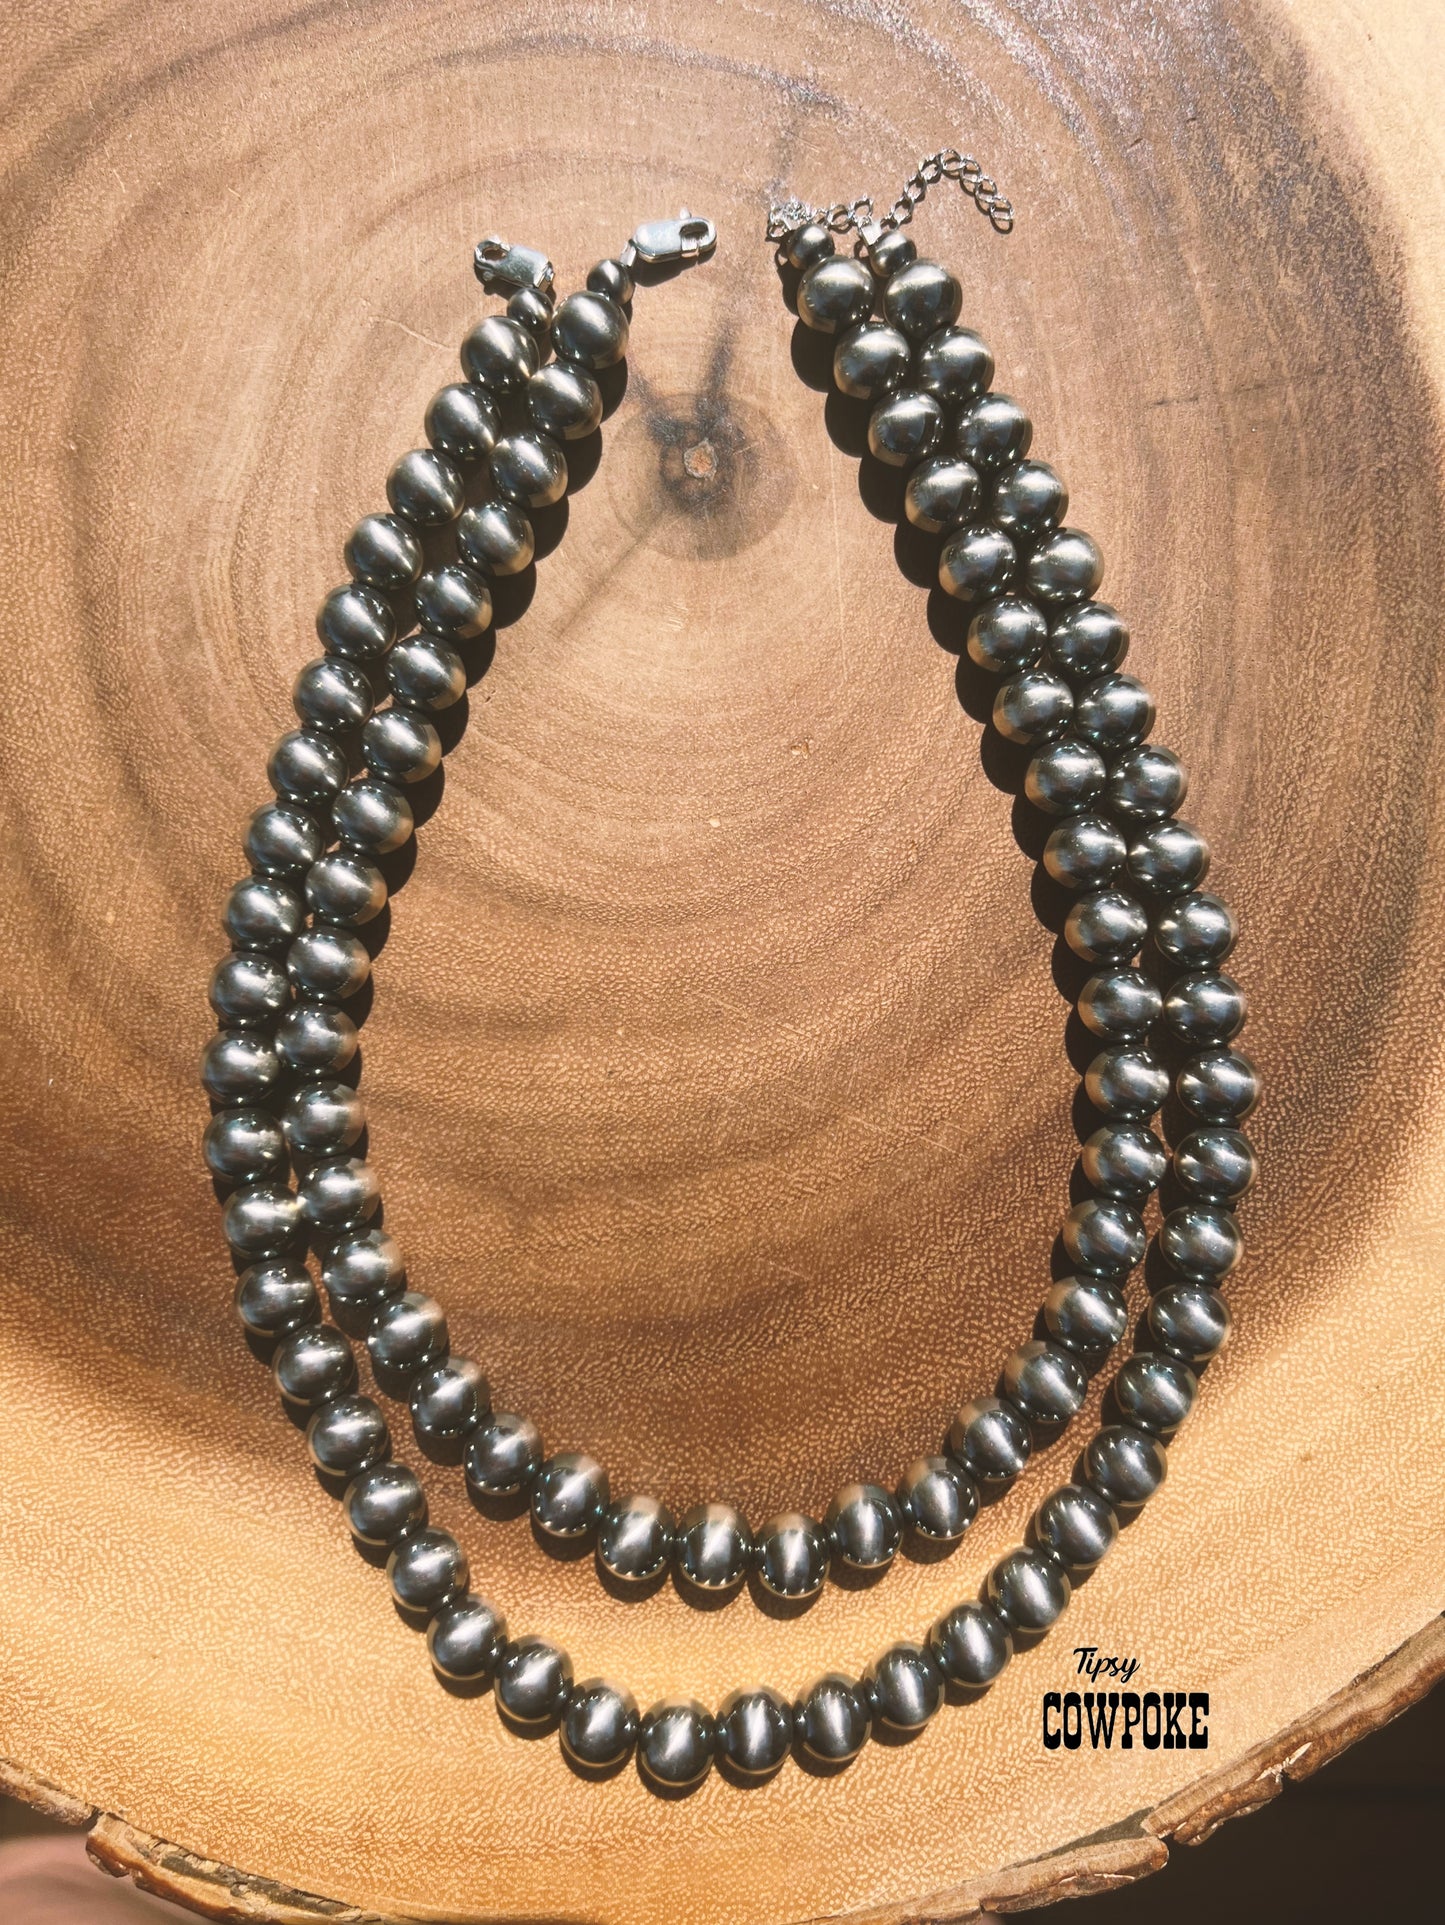 ** 10mm "Navajo Pearl" Necklaces **